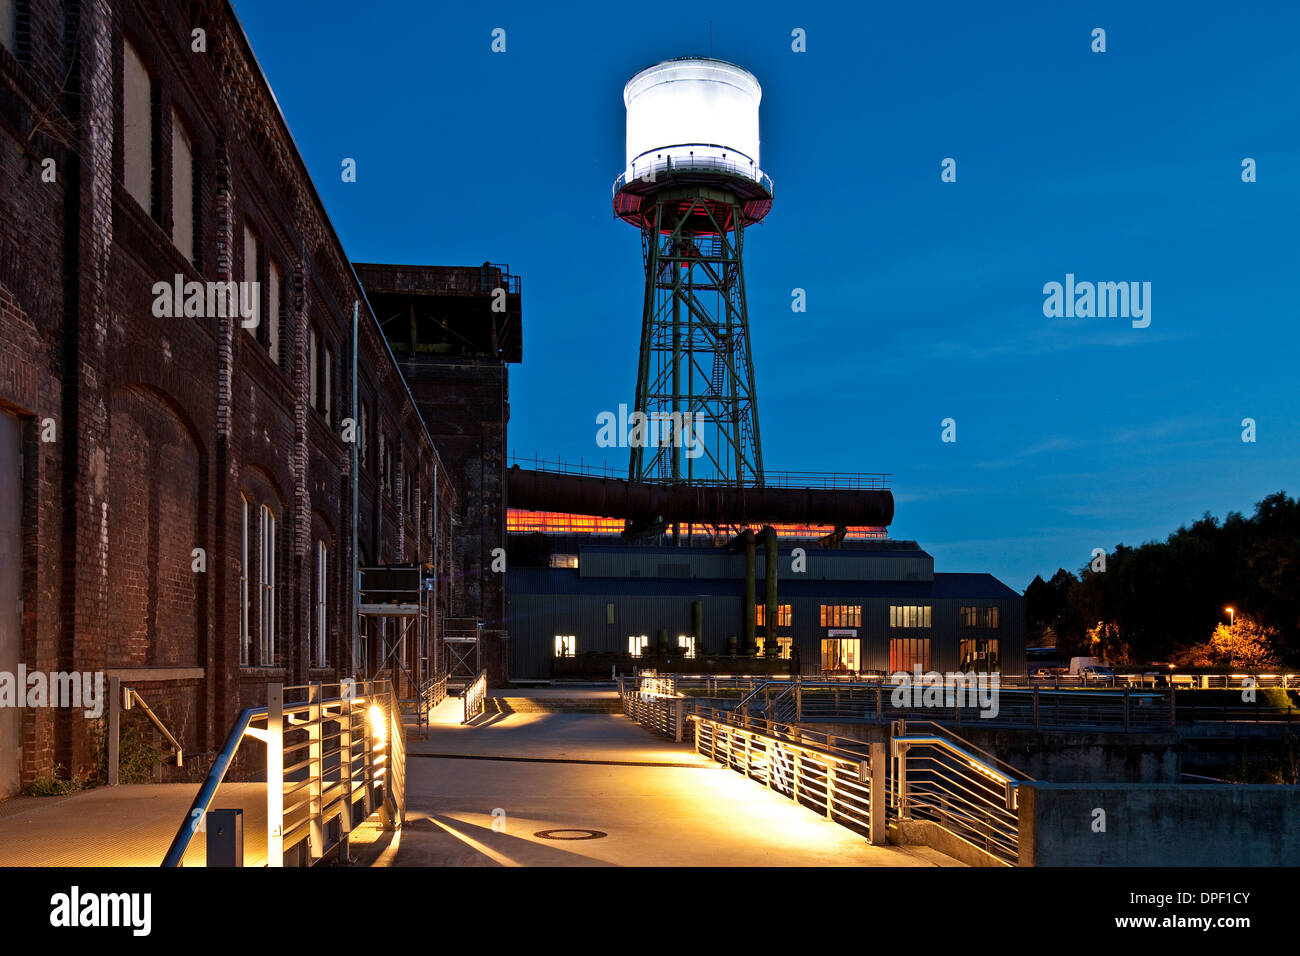 Jahrhunderthalle oder Jahrhunderthalle mit einem Wasserturm in der Abenddämmerung, Bochum, Nordrhein-Westfalen, Deutschland Stockfoto